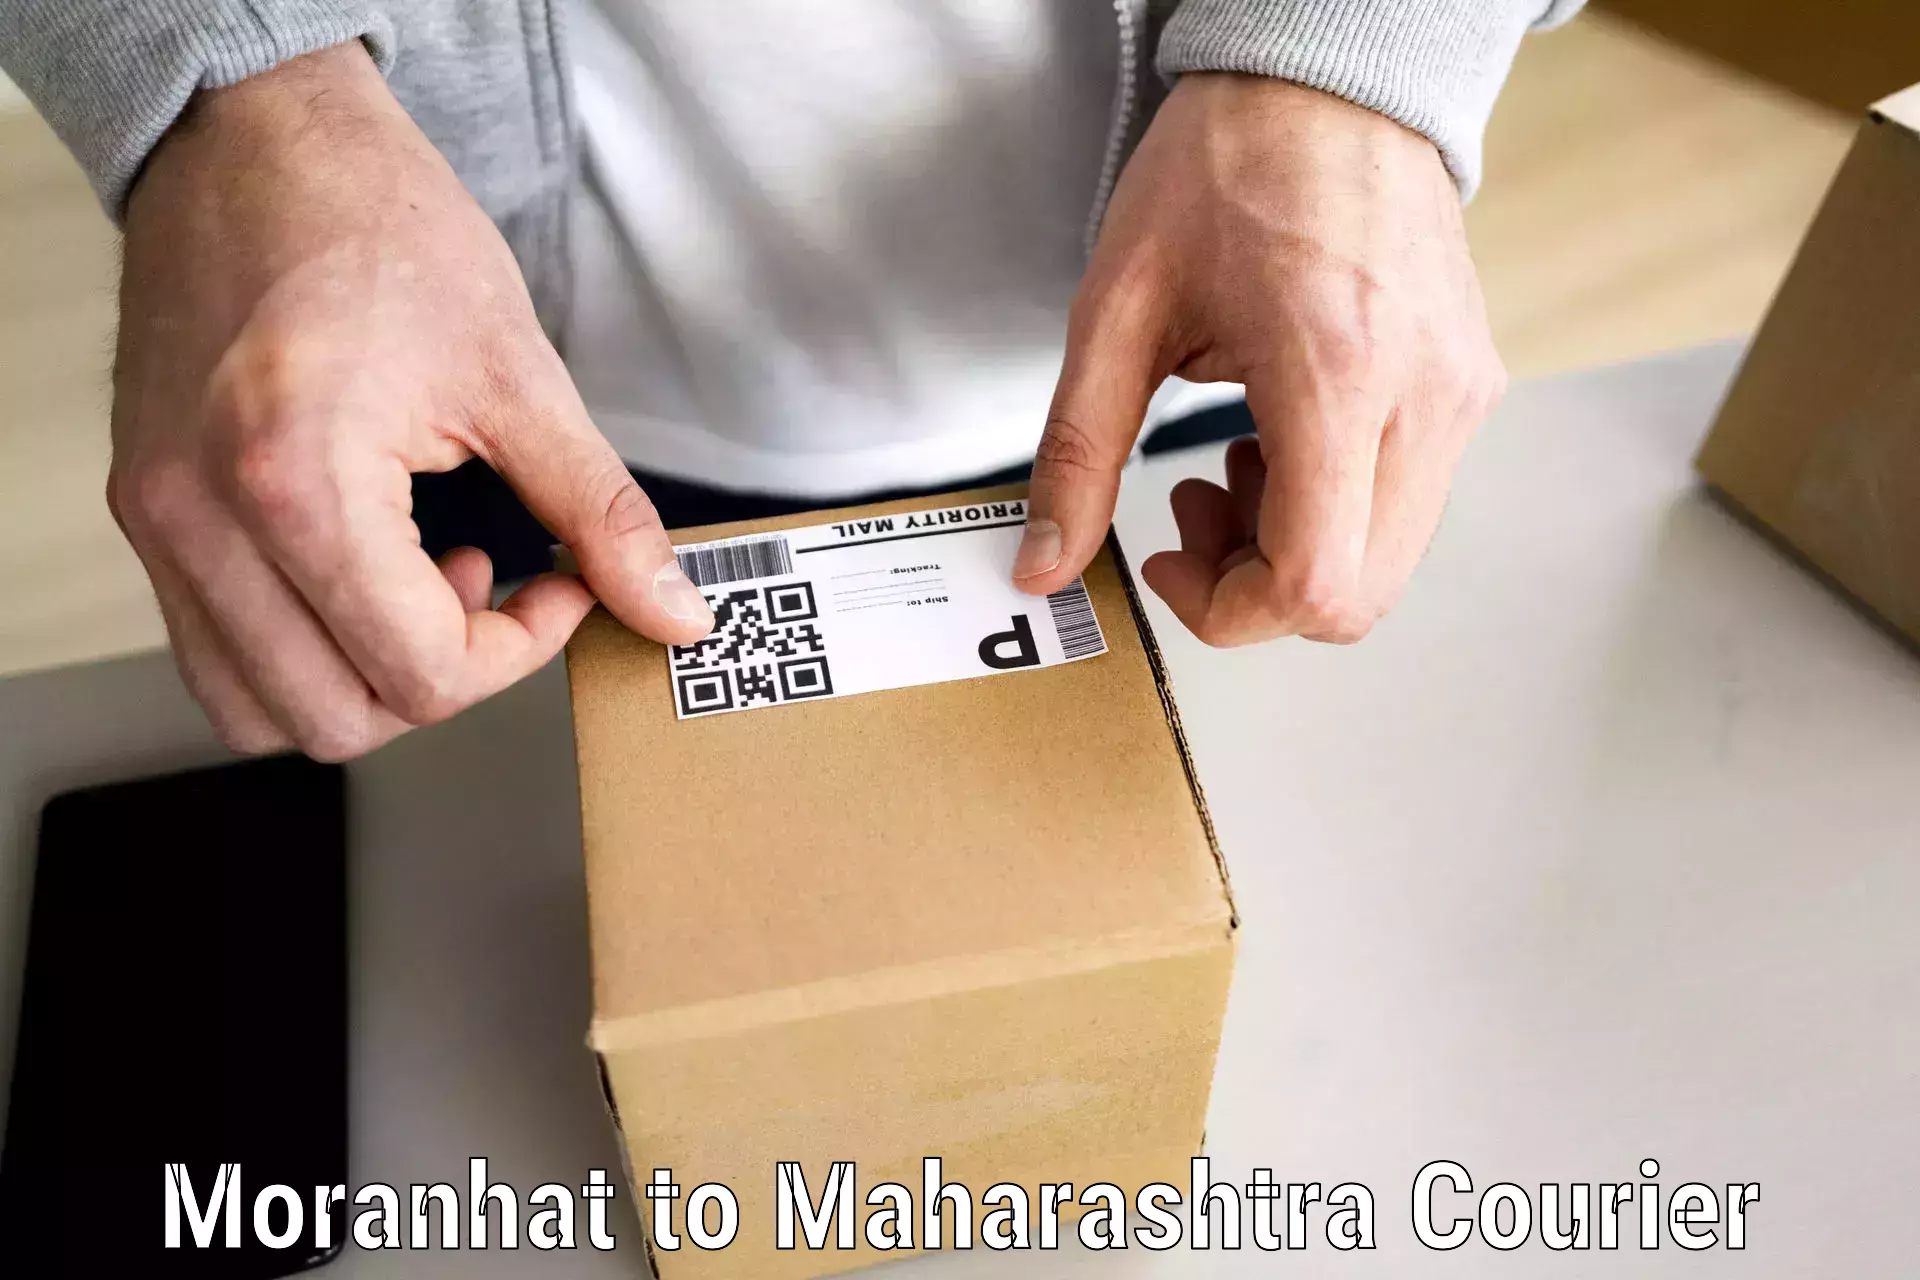 Reliable goods transport Moranhat to Tata Institute of Social Sciences Mumbai